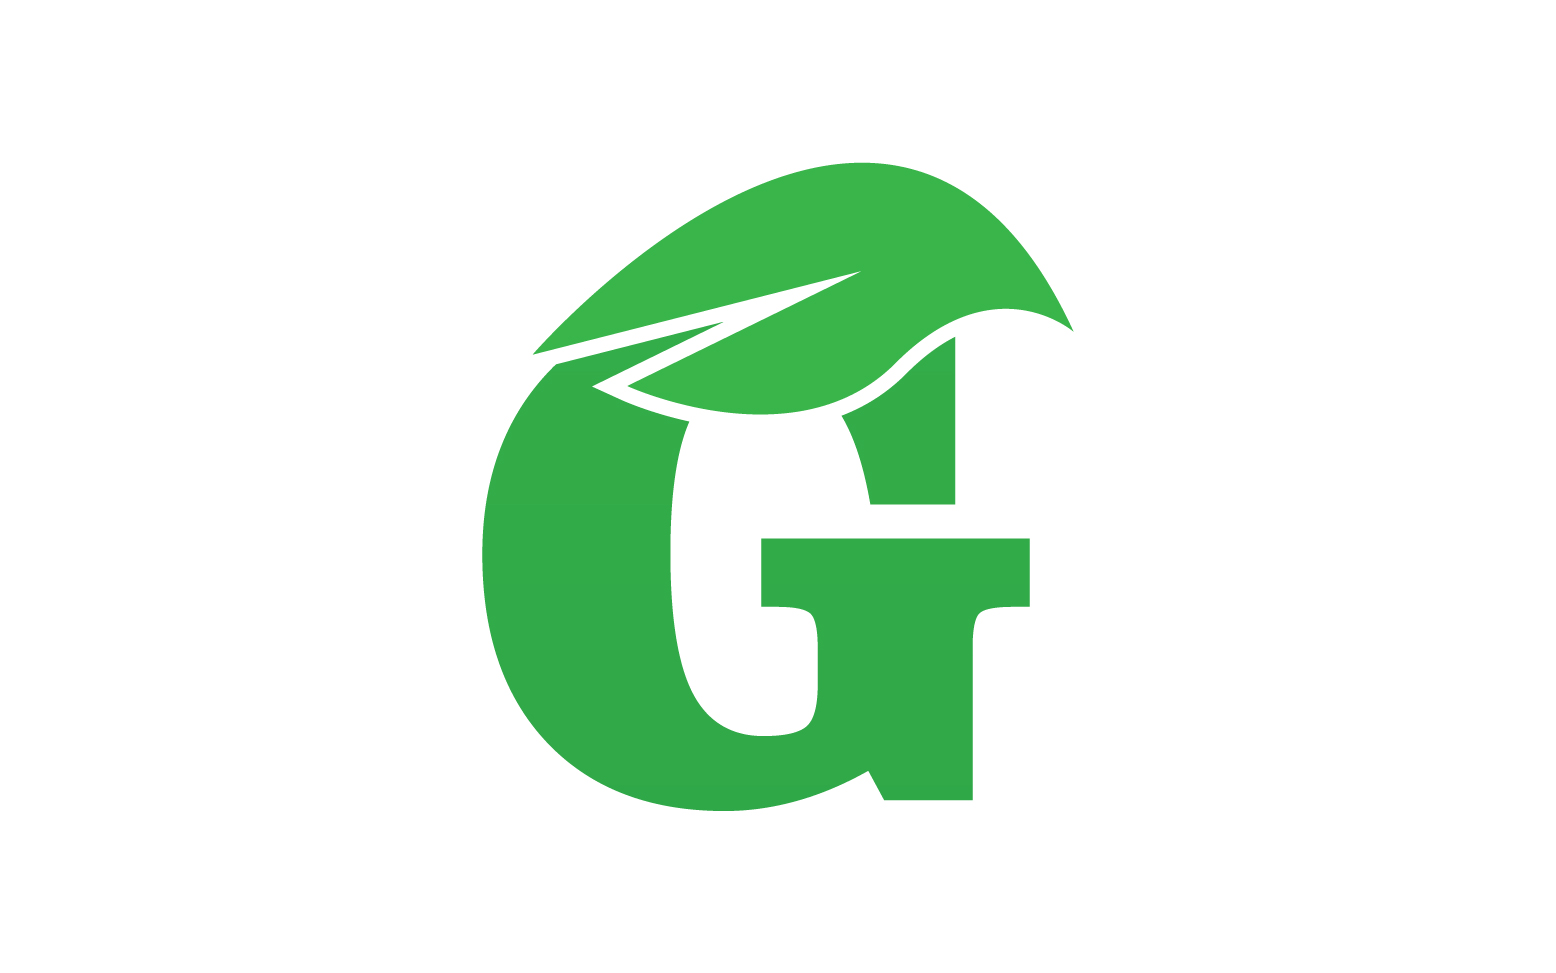 G letter leaf green logo icon version v36